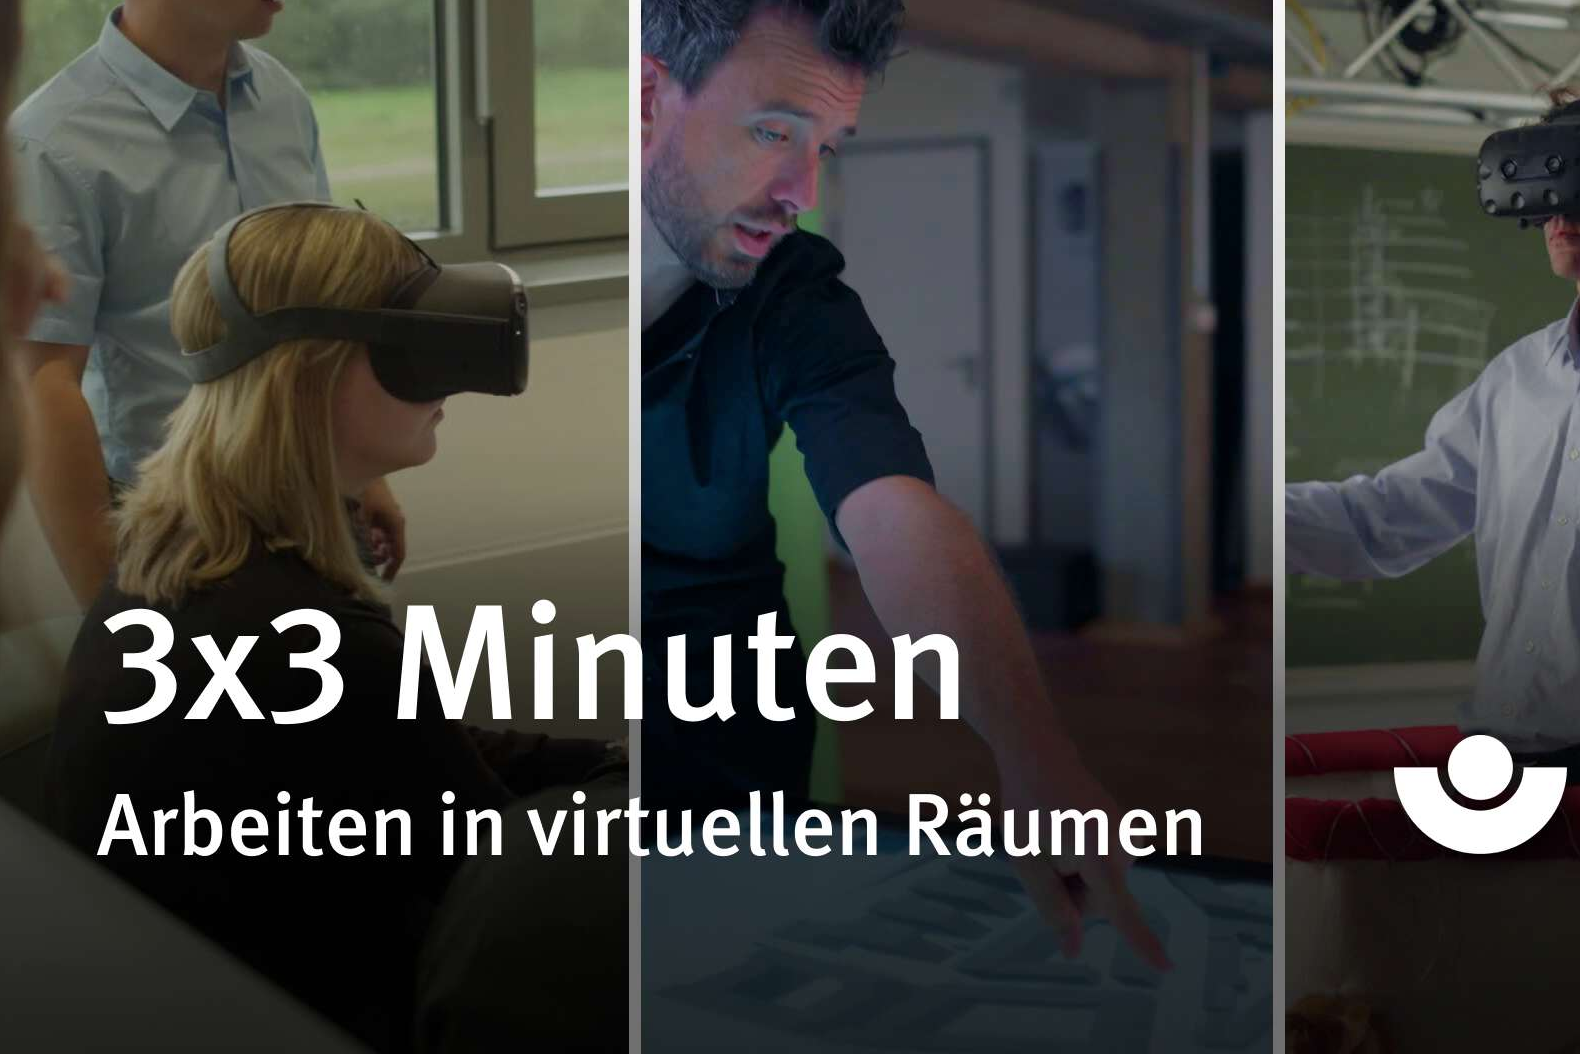 Introbild für die Filmereihe 3 x 3 Minuten Arbeiten in virtuellen Räumen. Personen werden mit VR-Brillen abgebildet